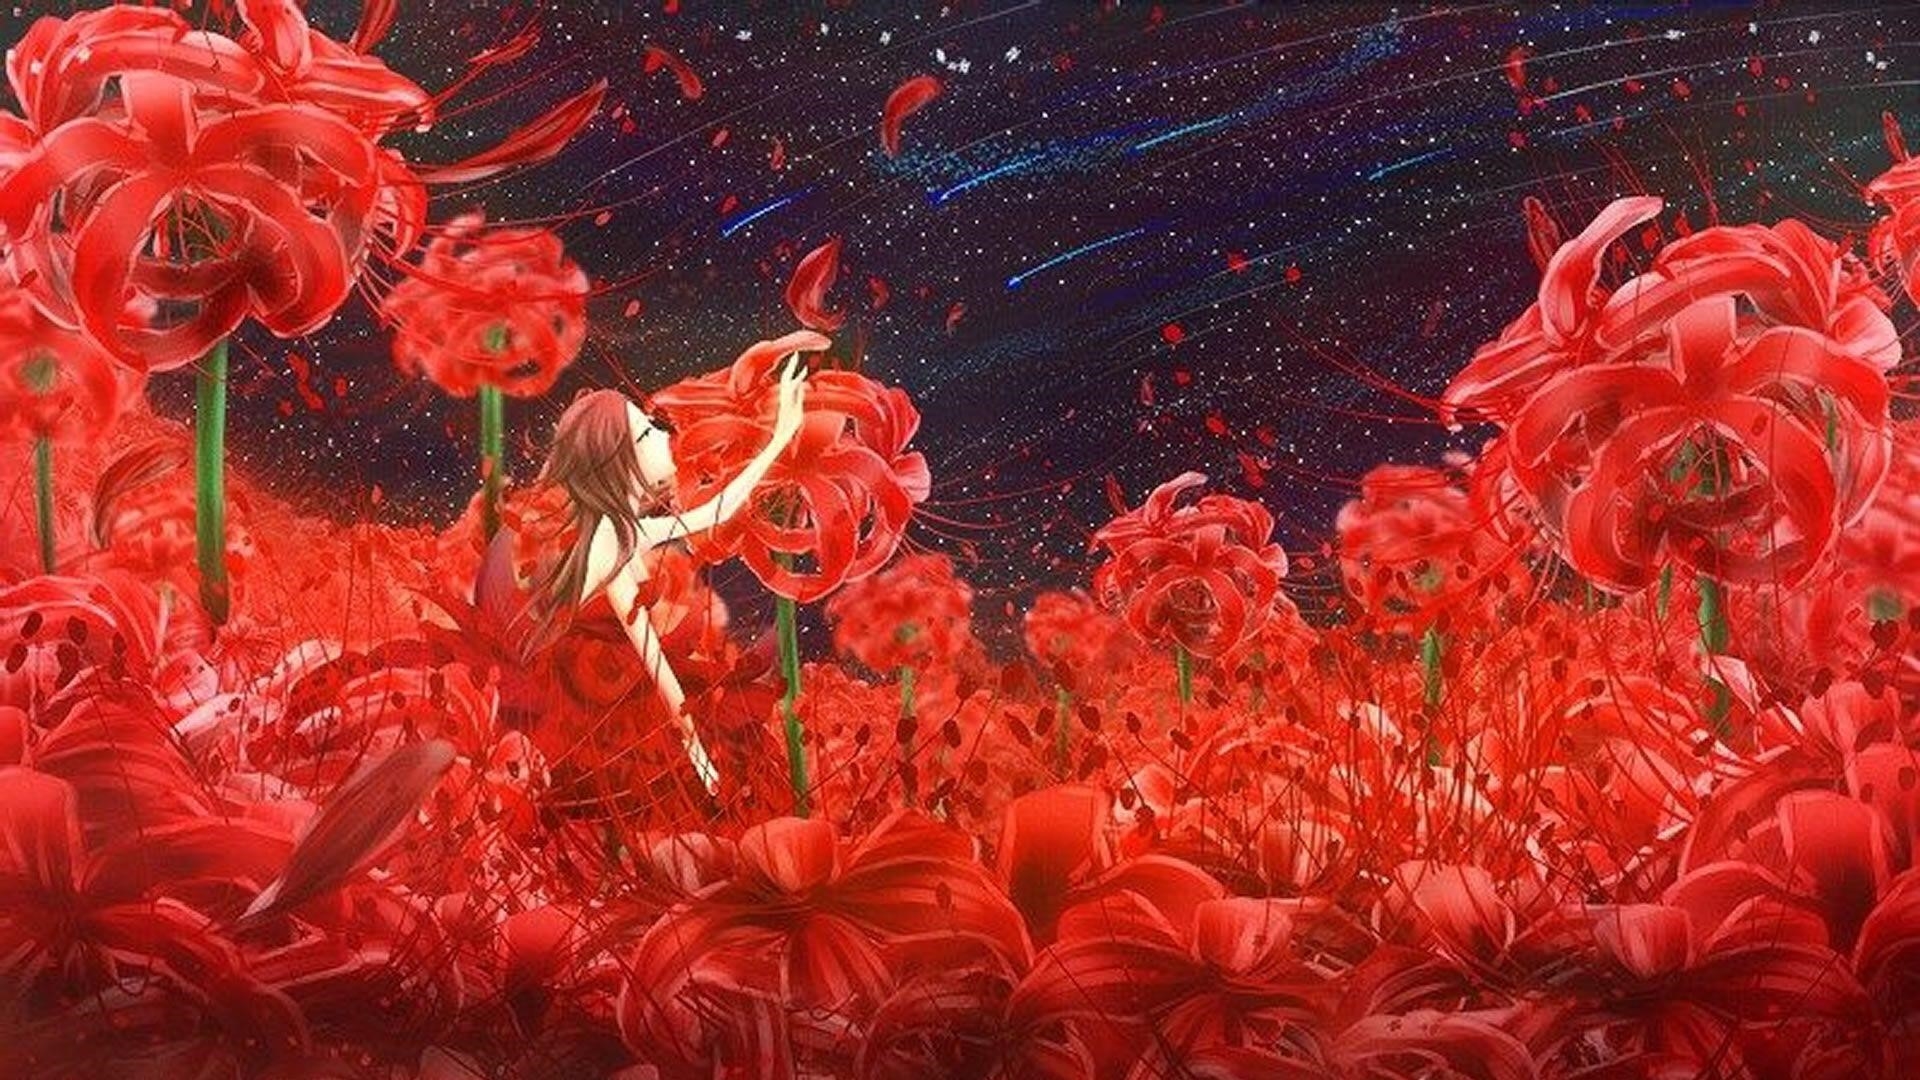 Hoa bỉ ngạn anime là một loại hoa tượng trưng cho sự tinh khiết và đẹp đẽ trong các bộ phim hoạt hình Nhật Bản, với những đường nét mềm mại và màu sắc tươi sáng.